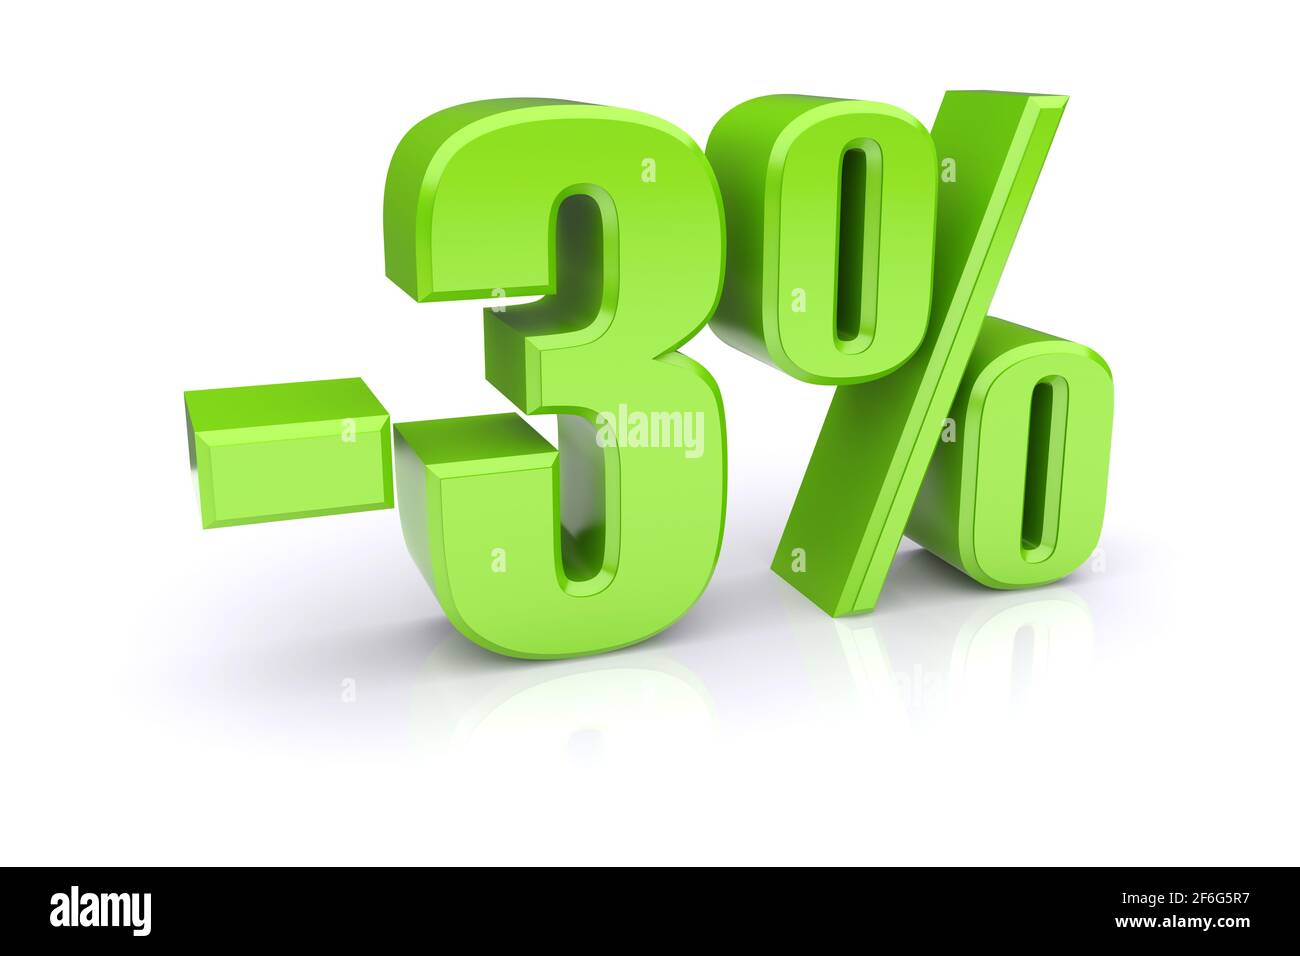 Icona verde del tasso percentuale del 3% su sfondo bianco. immagine 3d rappresentata Foto Stock